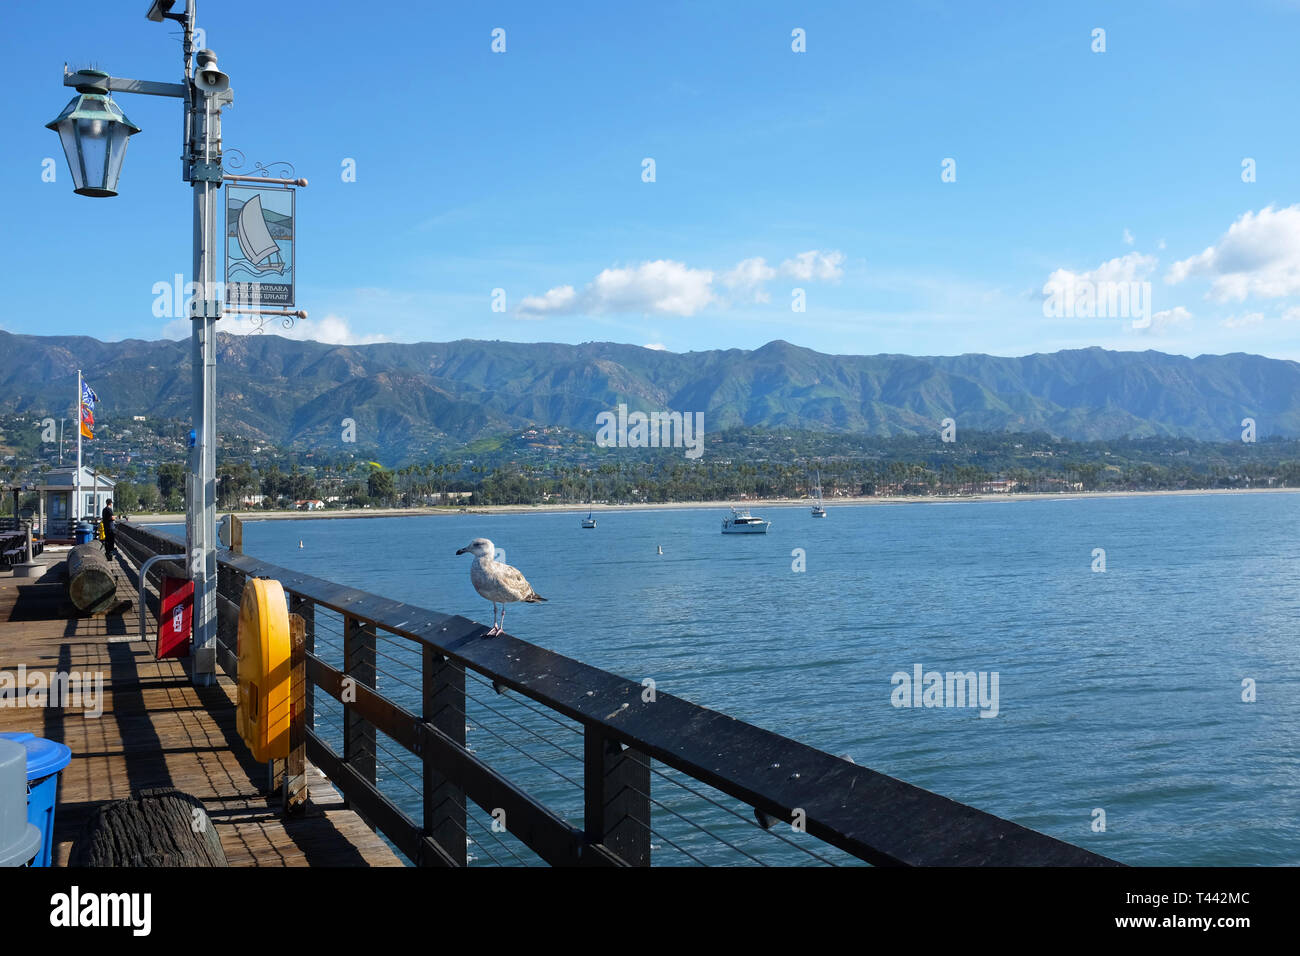 SANTA BARBARA, CALIFORNIE - 12 avril 2019 : Stearns Wharf avec une mouette, le littoral et les montagnes de Santa Ynez en arrière-plan. Banque D'Images